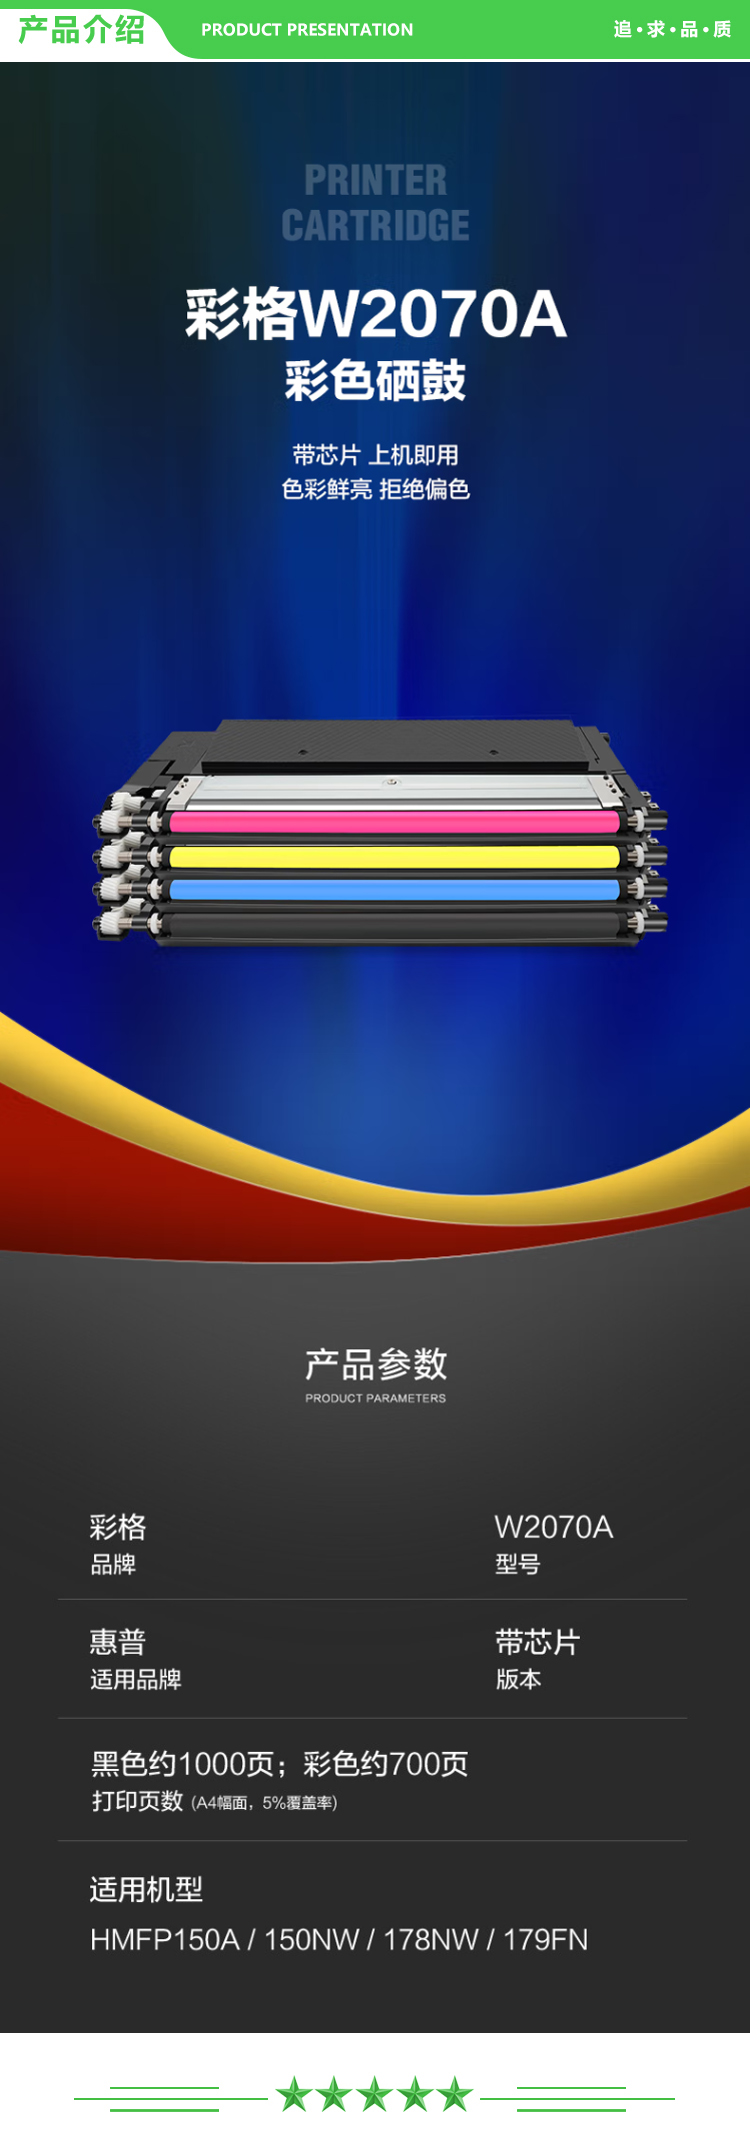 彩格 W2072A 粉盒黄色-带芯片 700页 适用惠普HP117A硒鼓 MFP150A 150NW 178NW 179FNW打印机墨盒.jpg